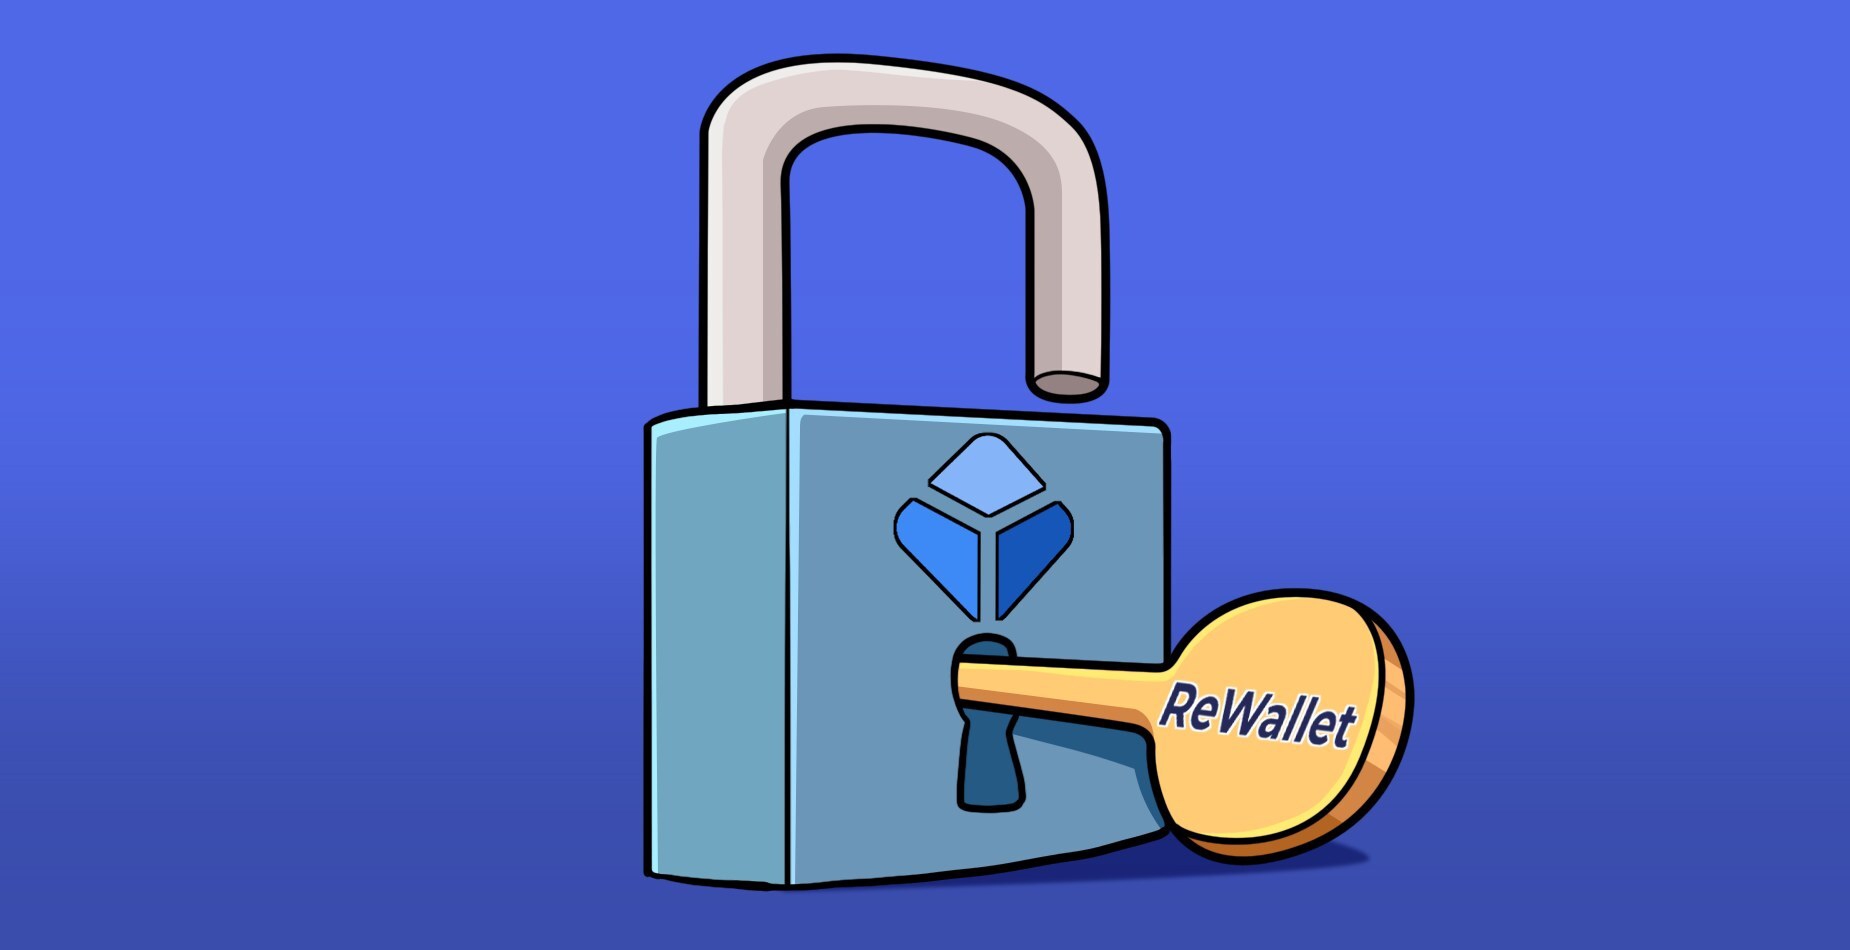 Un cadenas déverrouillé avec le logo Blockchain.com, dans lequel est insérée une clé avec le logo ReWallet, illustrant le processus de récupération du mot de passe Blockchain.